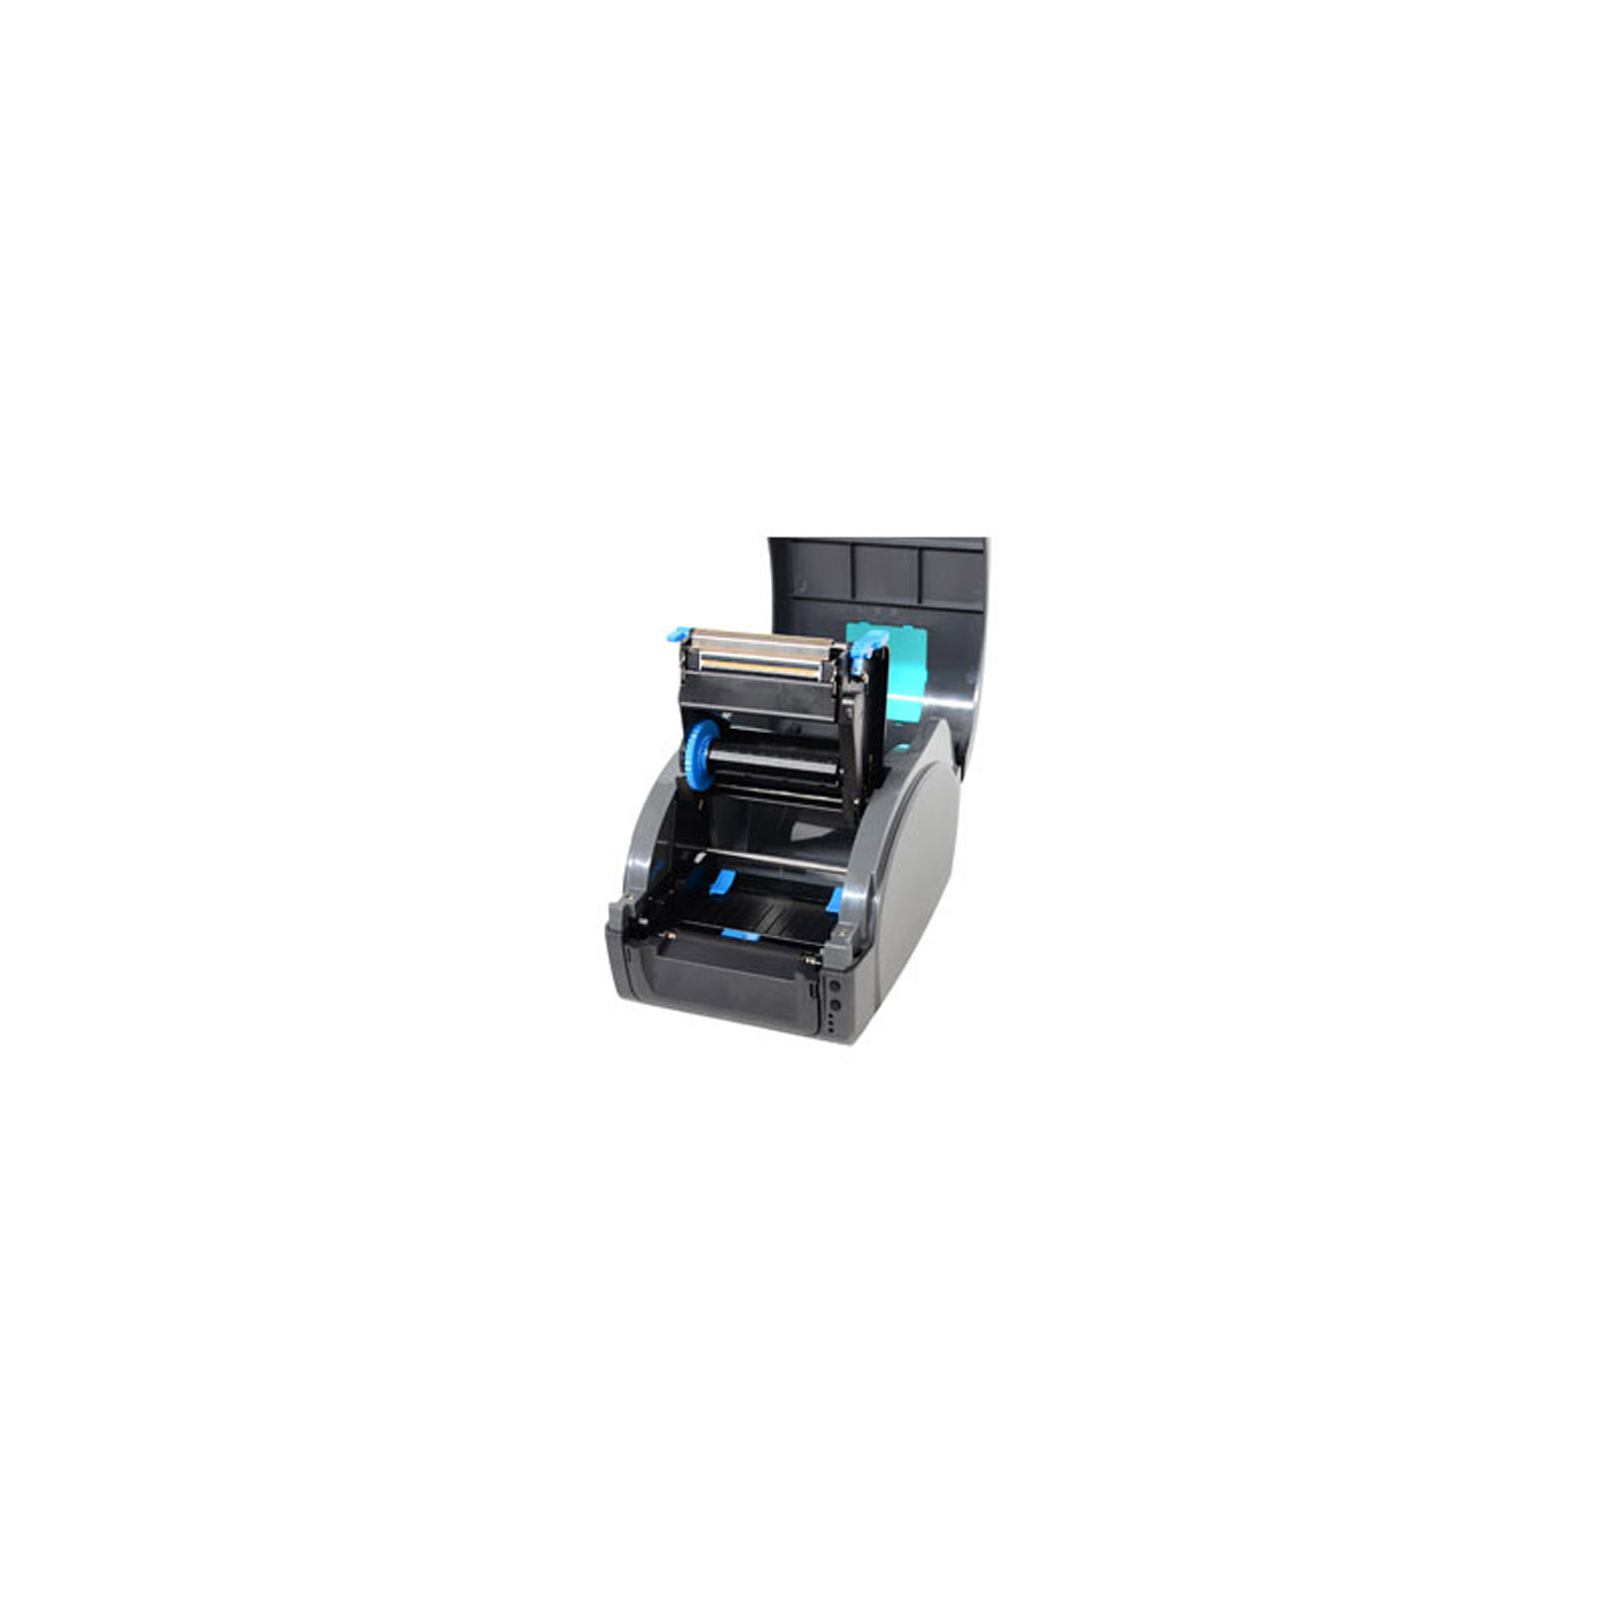 Принтер этикеток Gprinter GP-9026T (USB+RS232+Ethernet+LPT) (12903) изображение 3